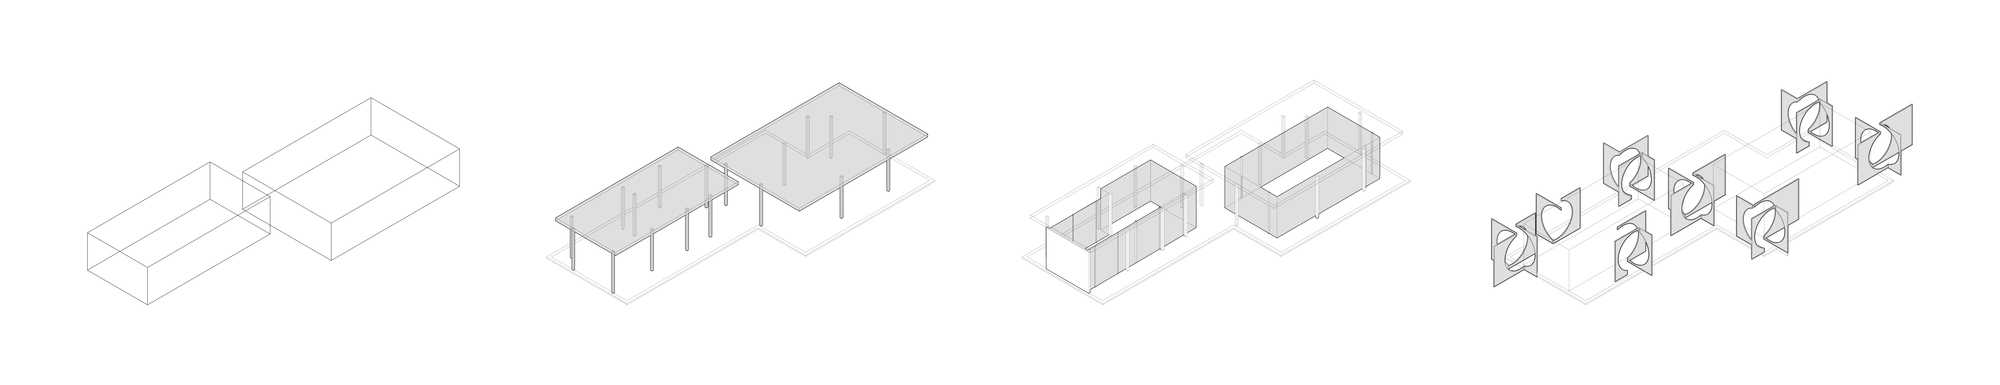 d1 _建筑生成过程：1.两个体量置入，分别为茶饮空间和活动空间_2.钢结构柱网结构体系_3.透明玻璃界面_4.置入由屏形成的关节部分。.jpg